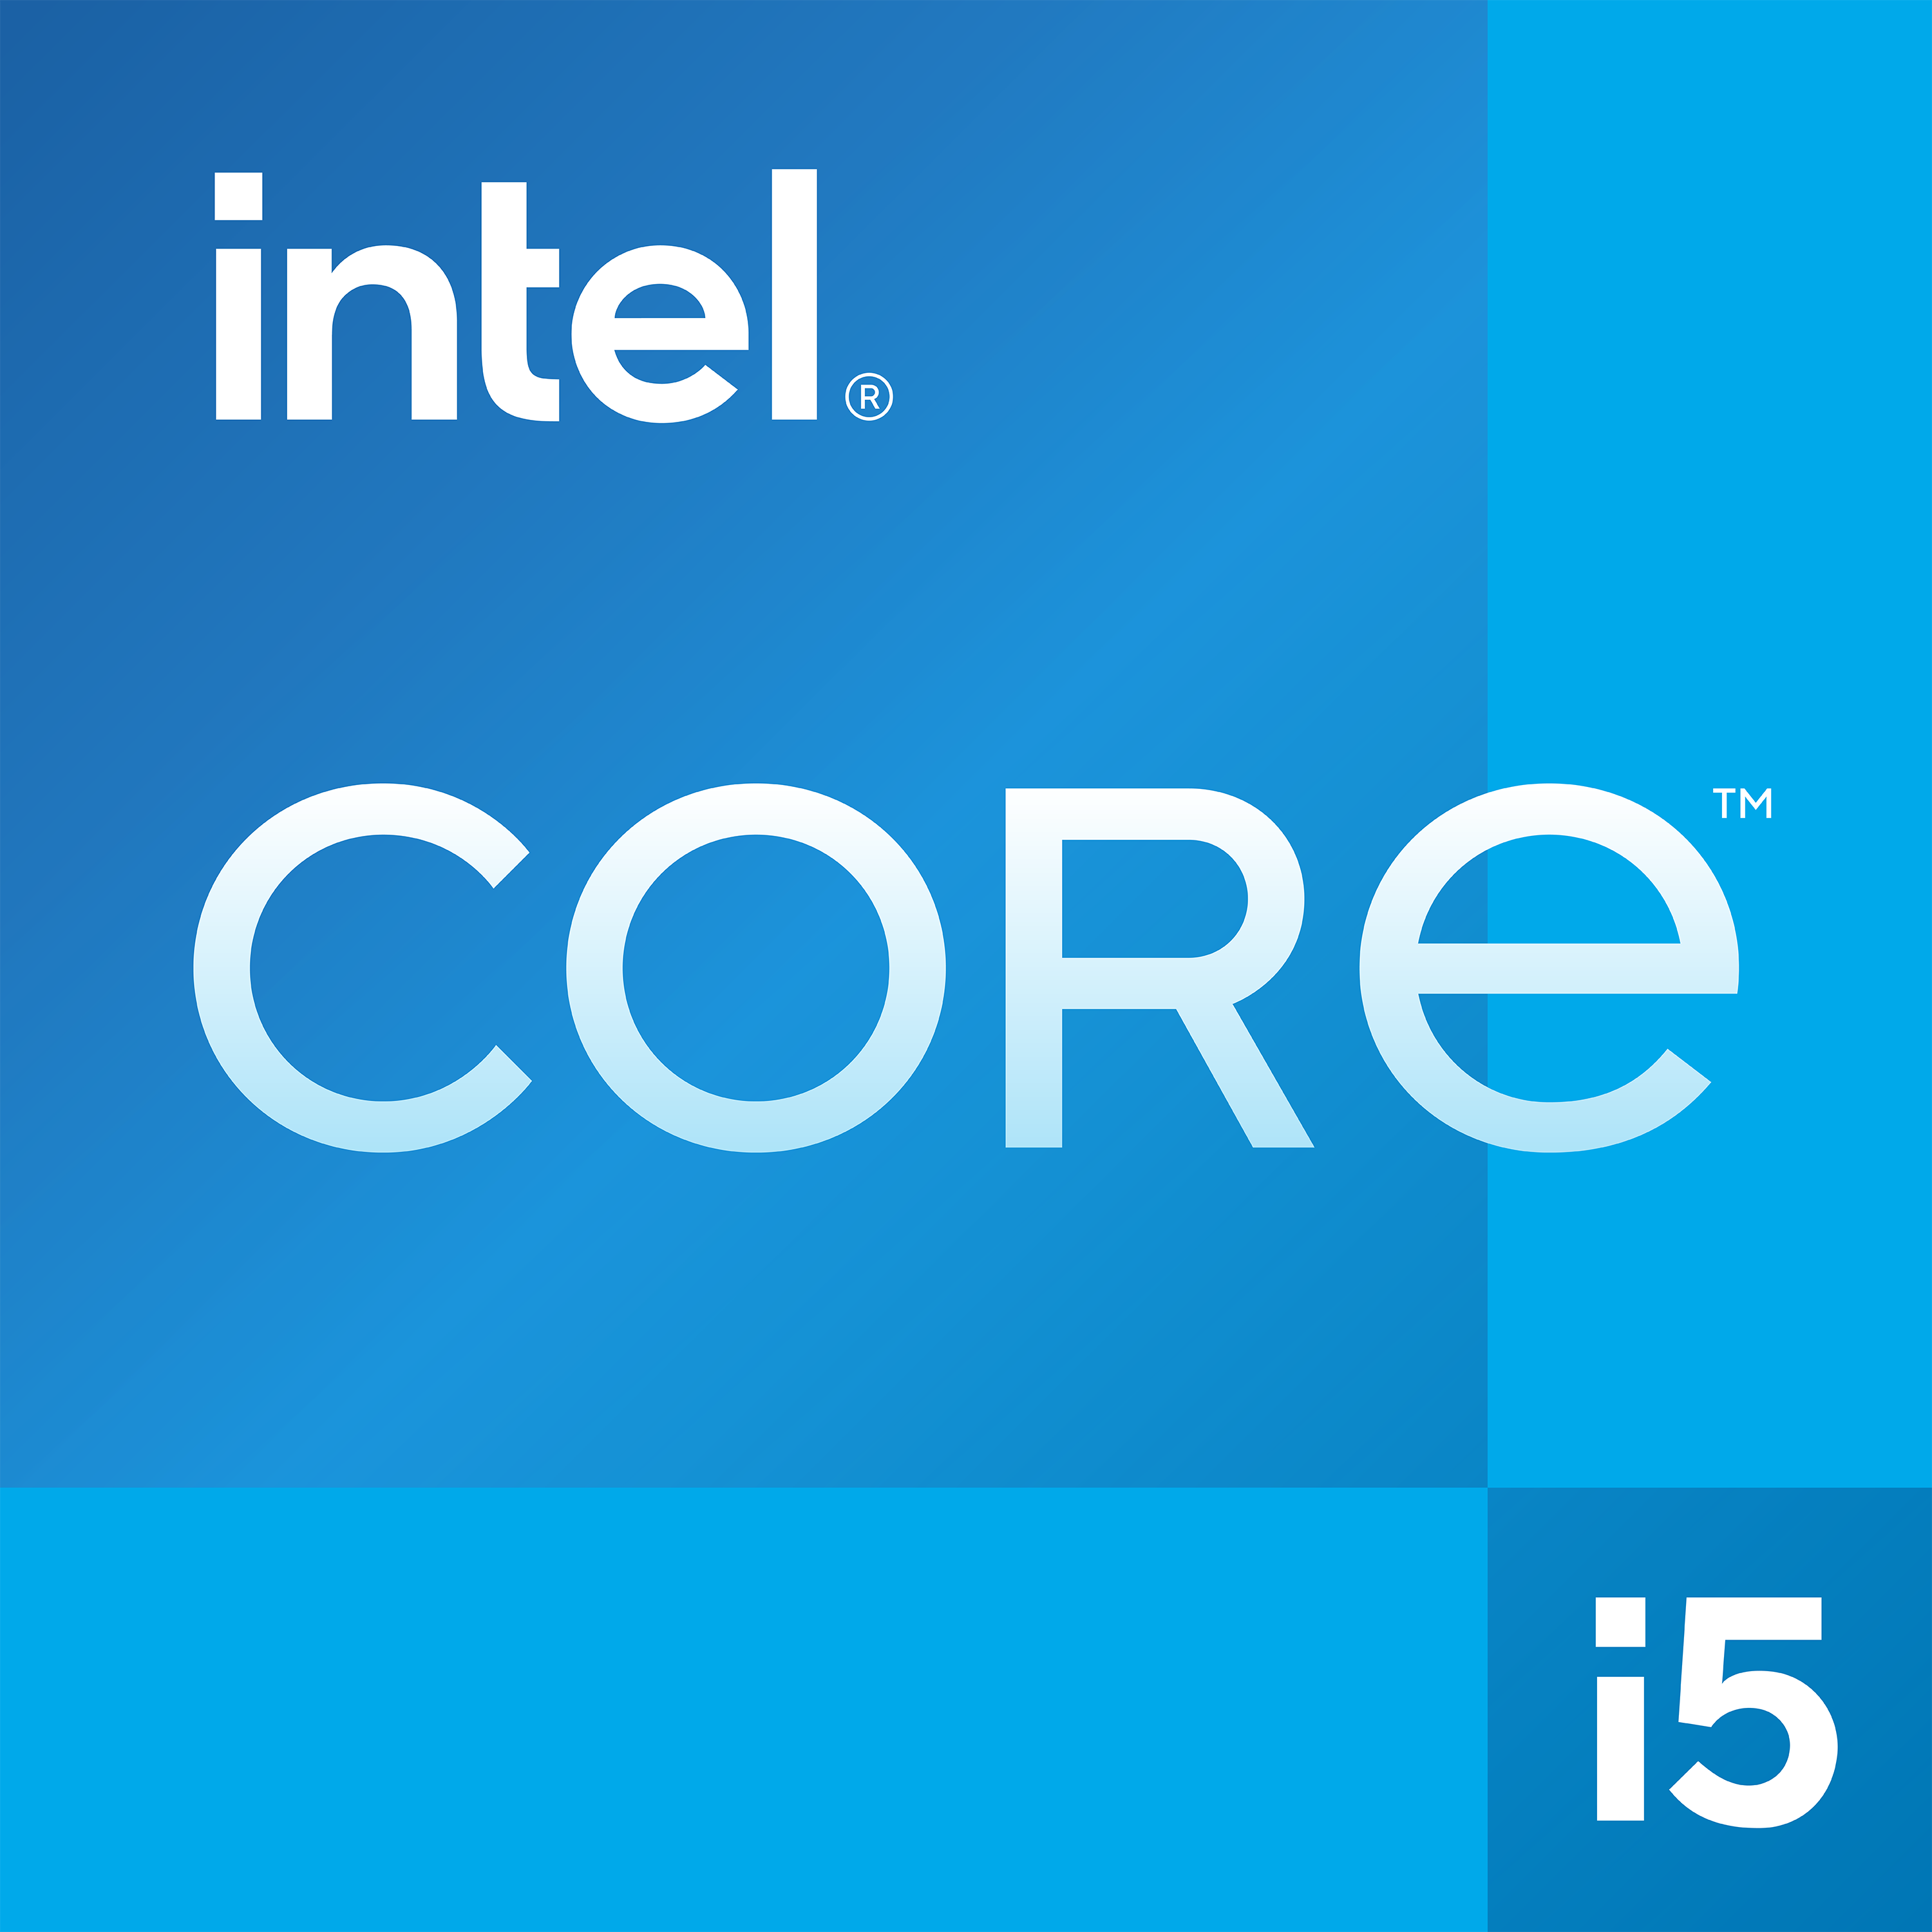 Intel® Core™ i7-10710U